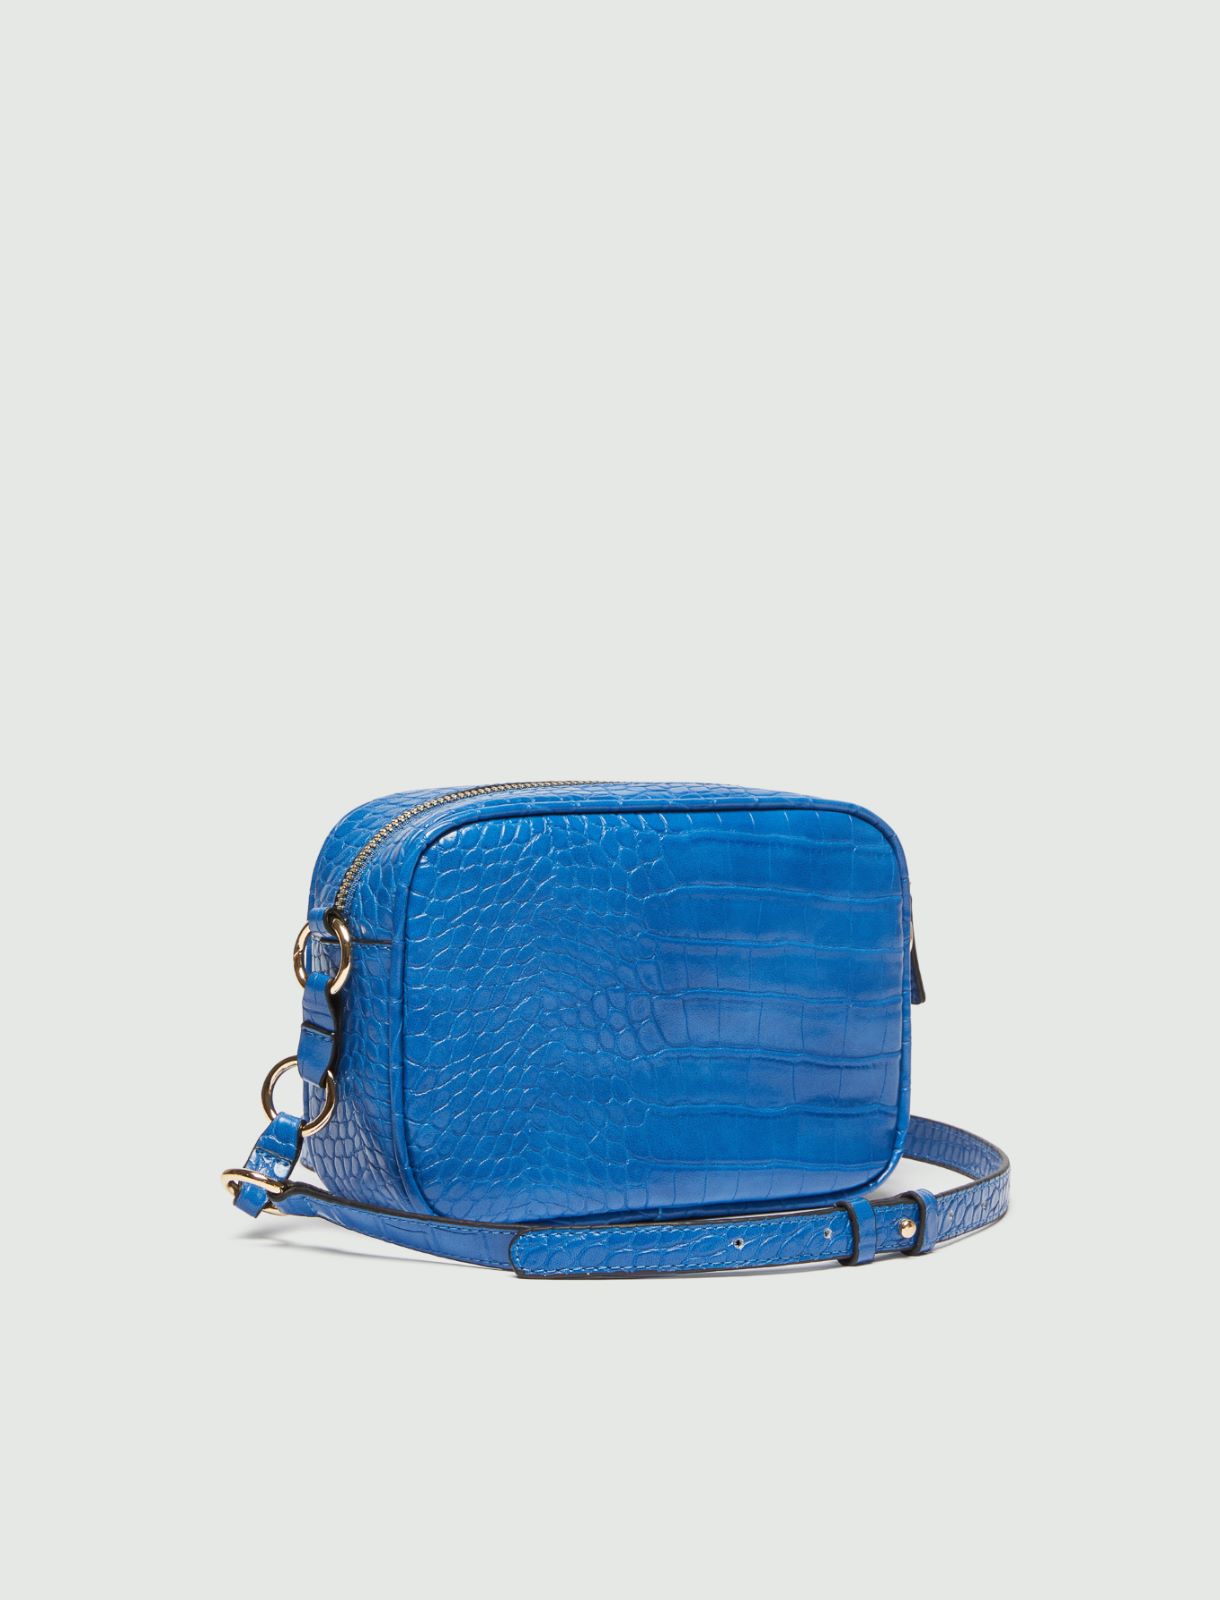 Tasche mit Tragriemen - Lichtblau - Marella - 2